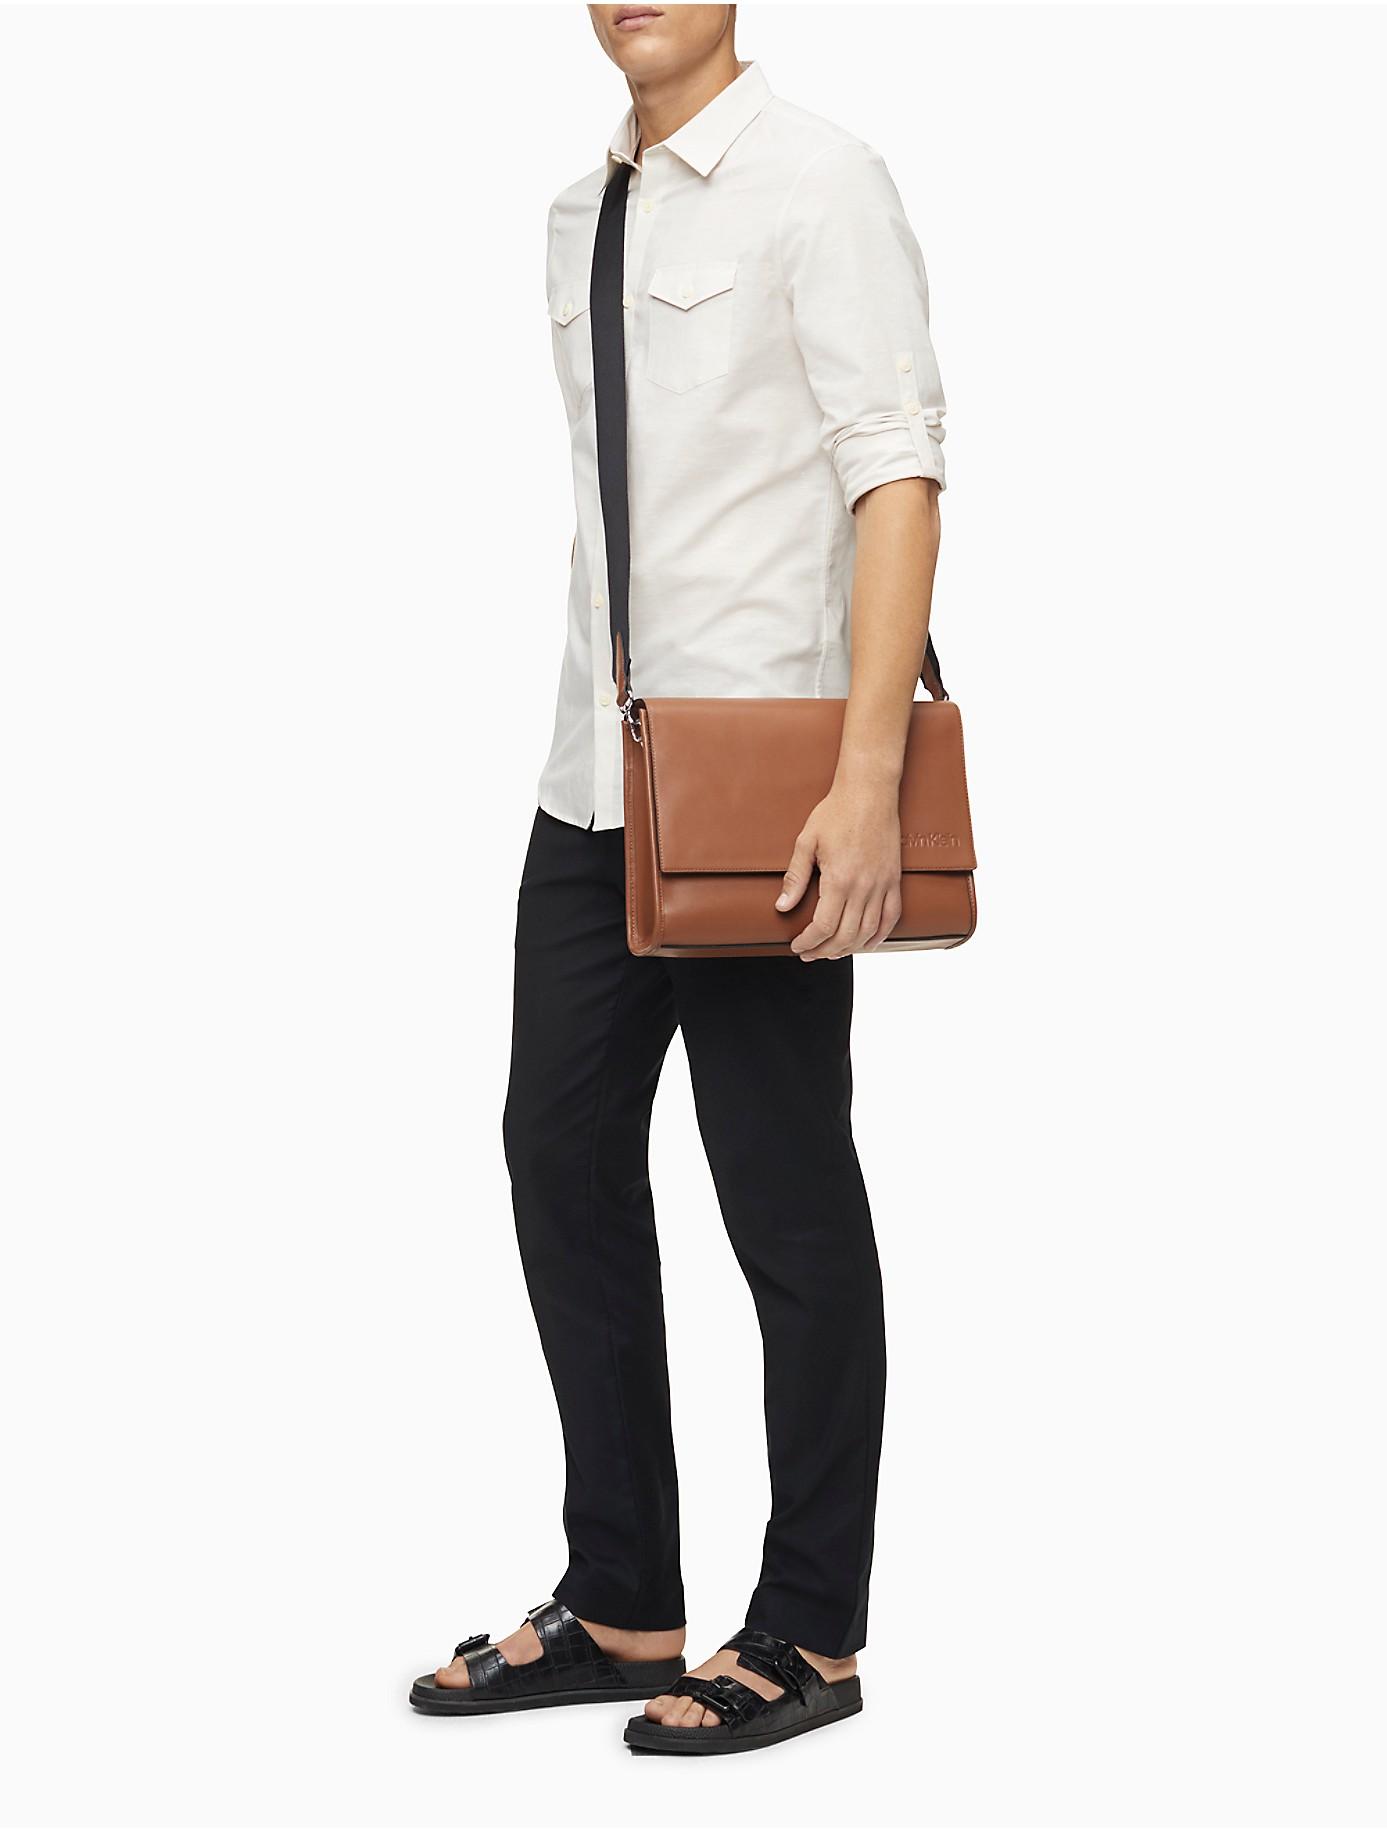 Vooruit dwaas Uitgebreid Calvin Klein Refined Leather Messenger Bag in Brown for Men | Lyst